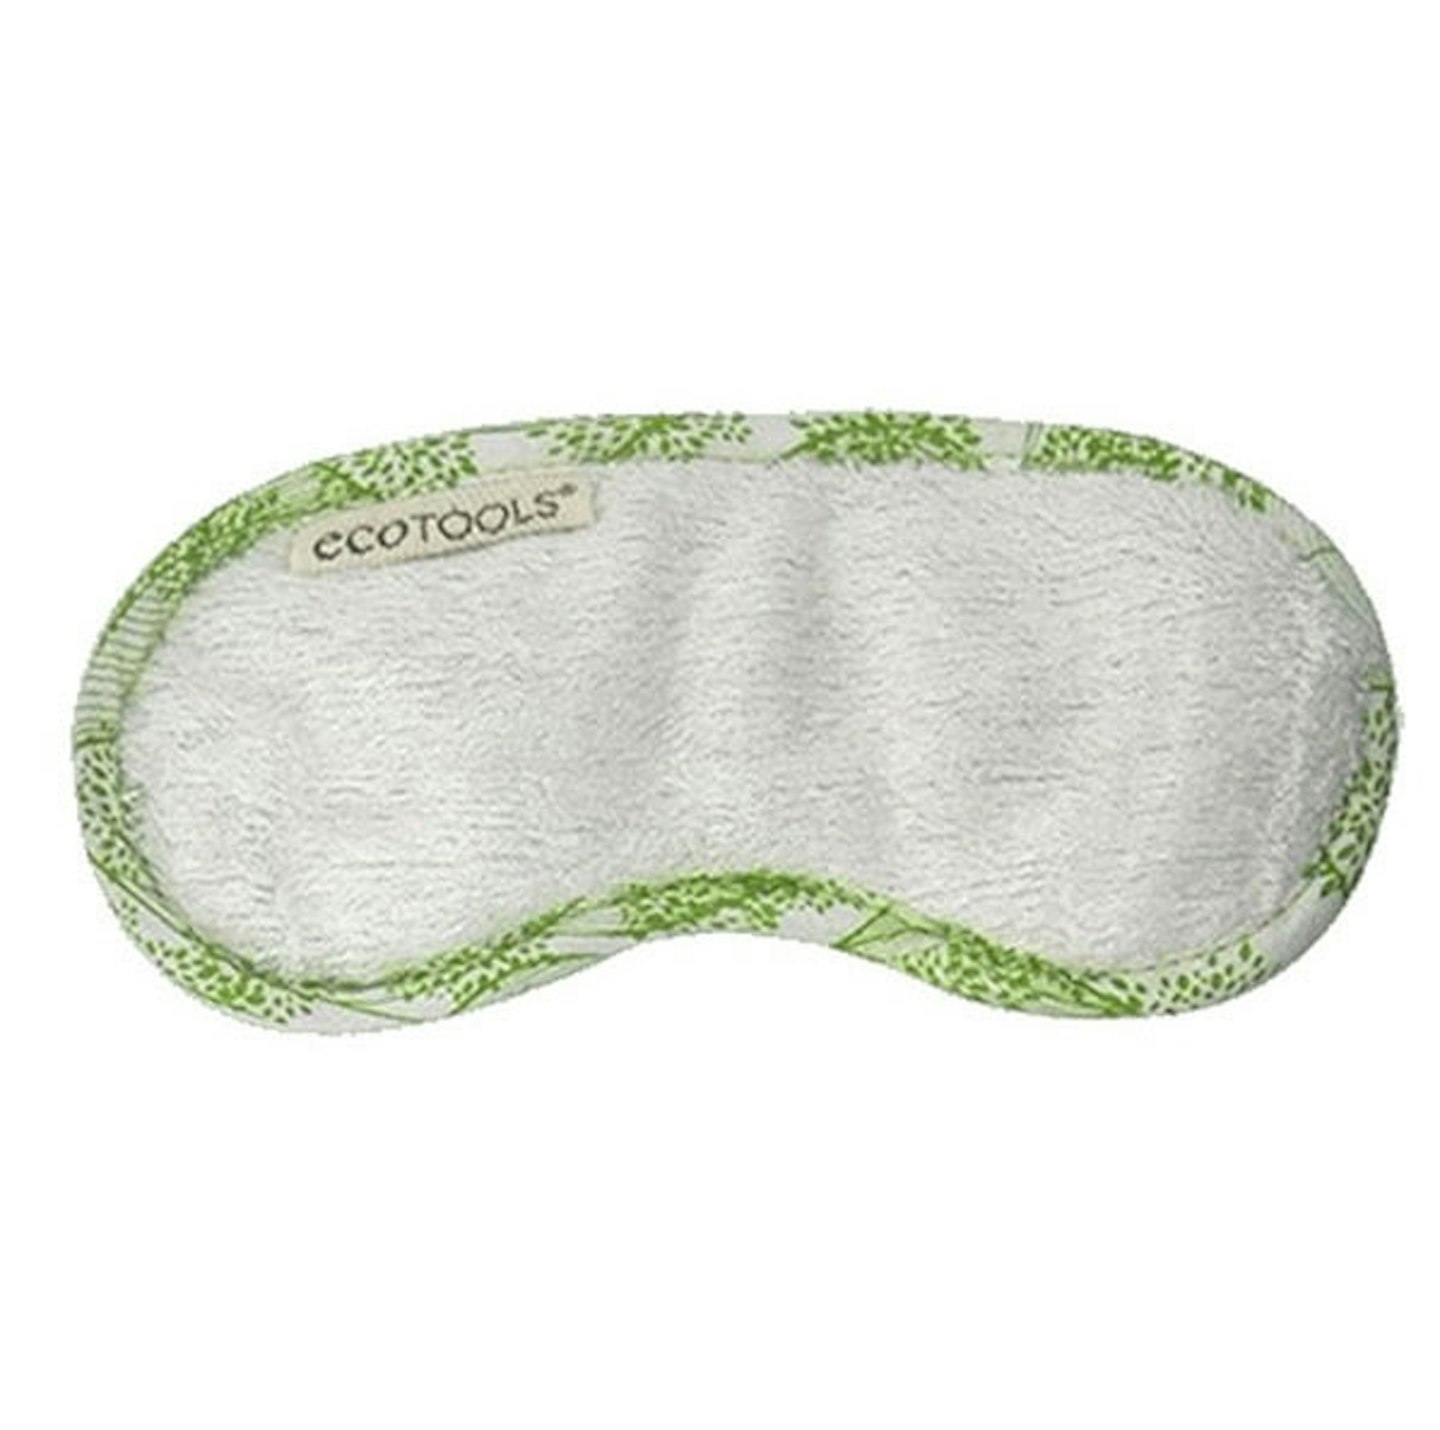 EcoTools Sustainable Sleep Mask, £4.99